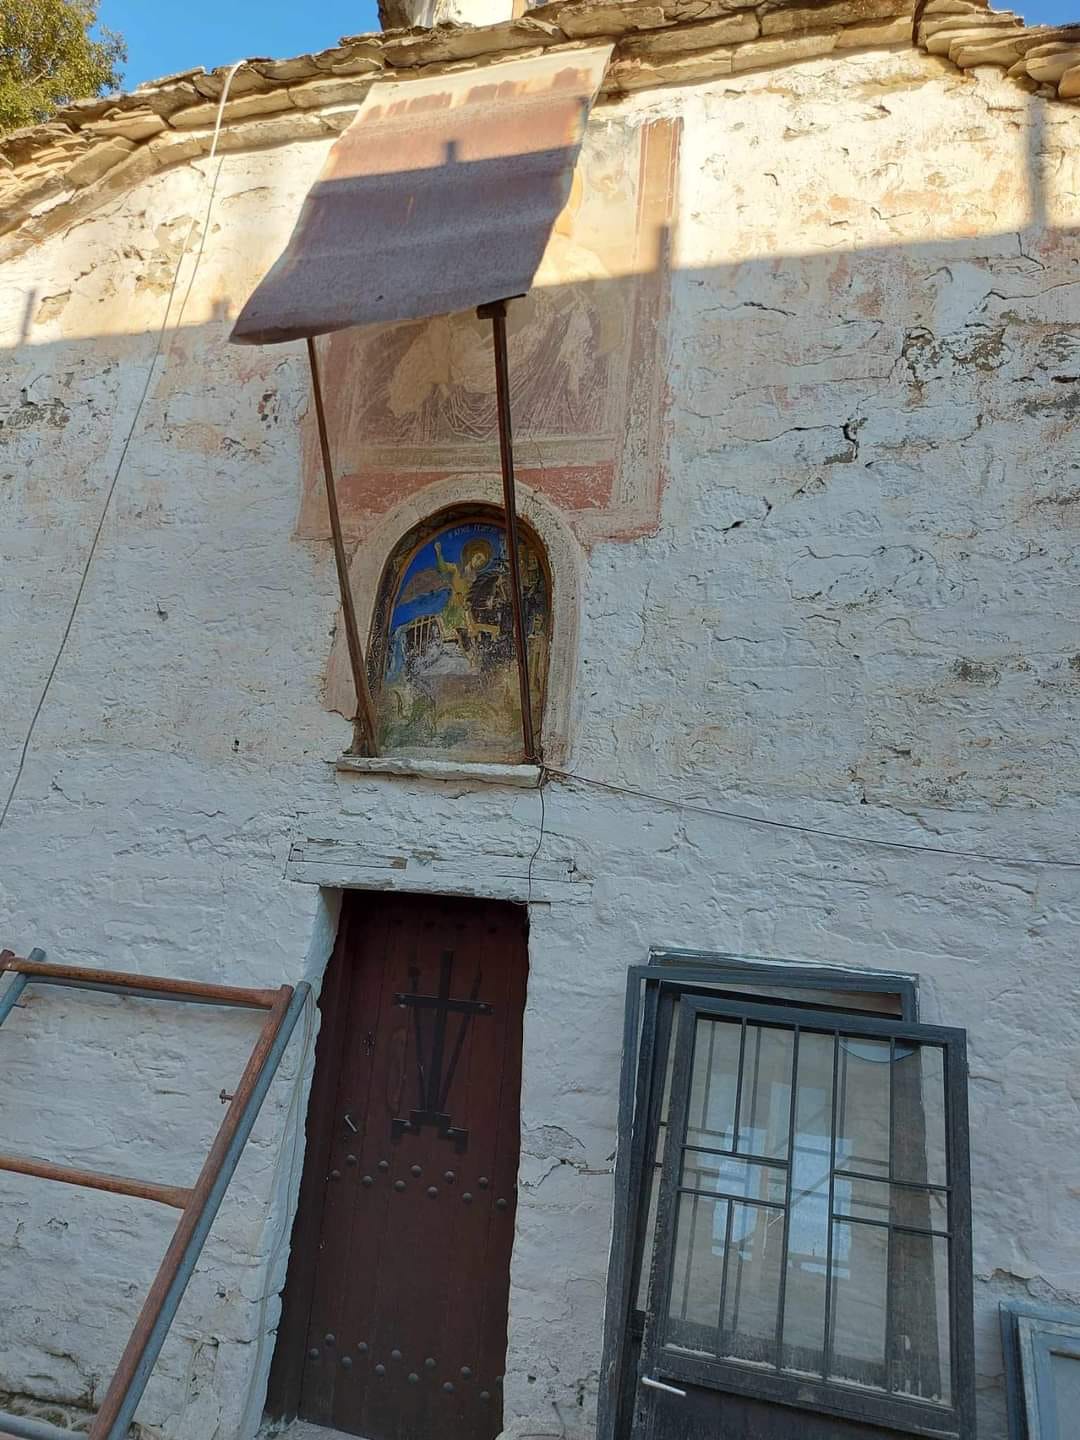 Με γοργούς ρυθμούς οι εργασίες συντήρησης και αποκατάστασης των κτιρίων και του προαύλιου χώρου της Ιεράς Μονής Αγίου Γεωργίου στο Επταχώρι Καστοριάς